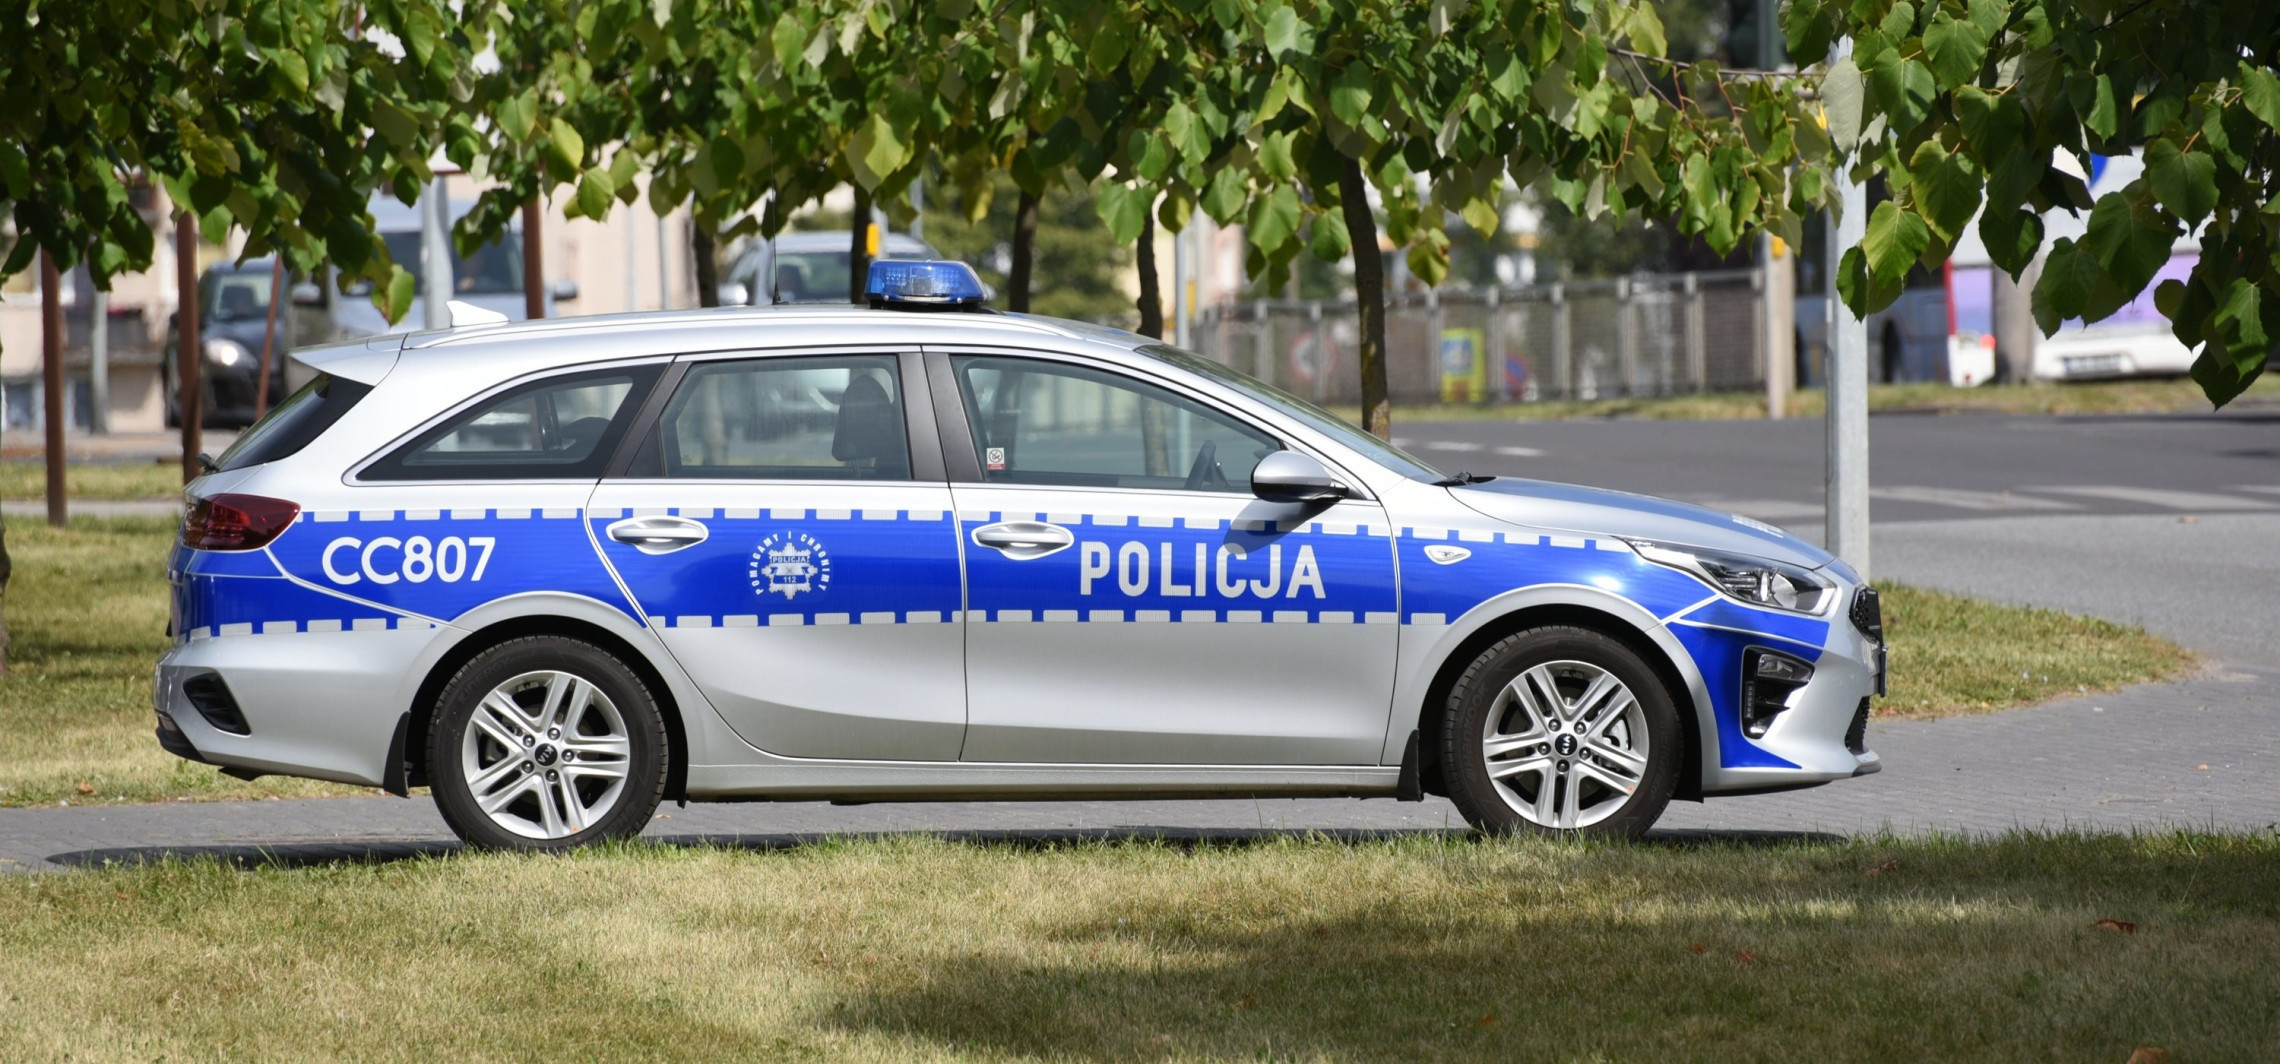 Inowrocław - Miasto przekaże policji dodatkowe pieniądze